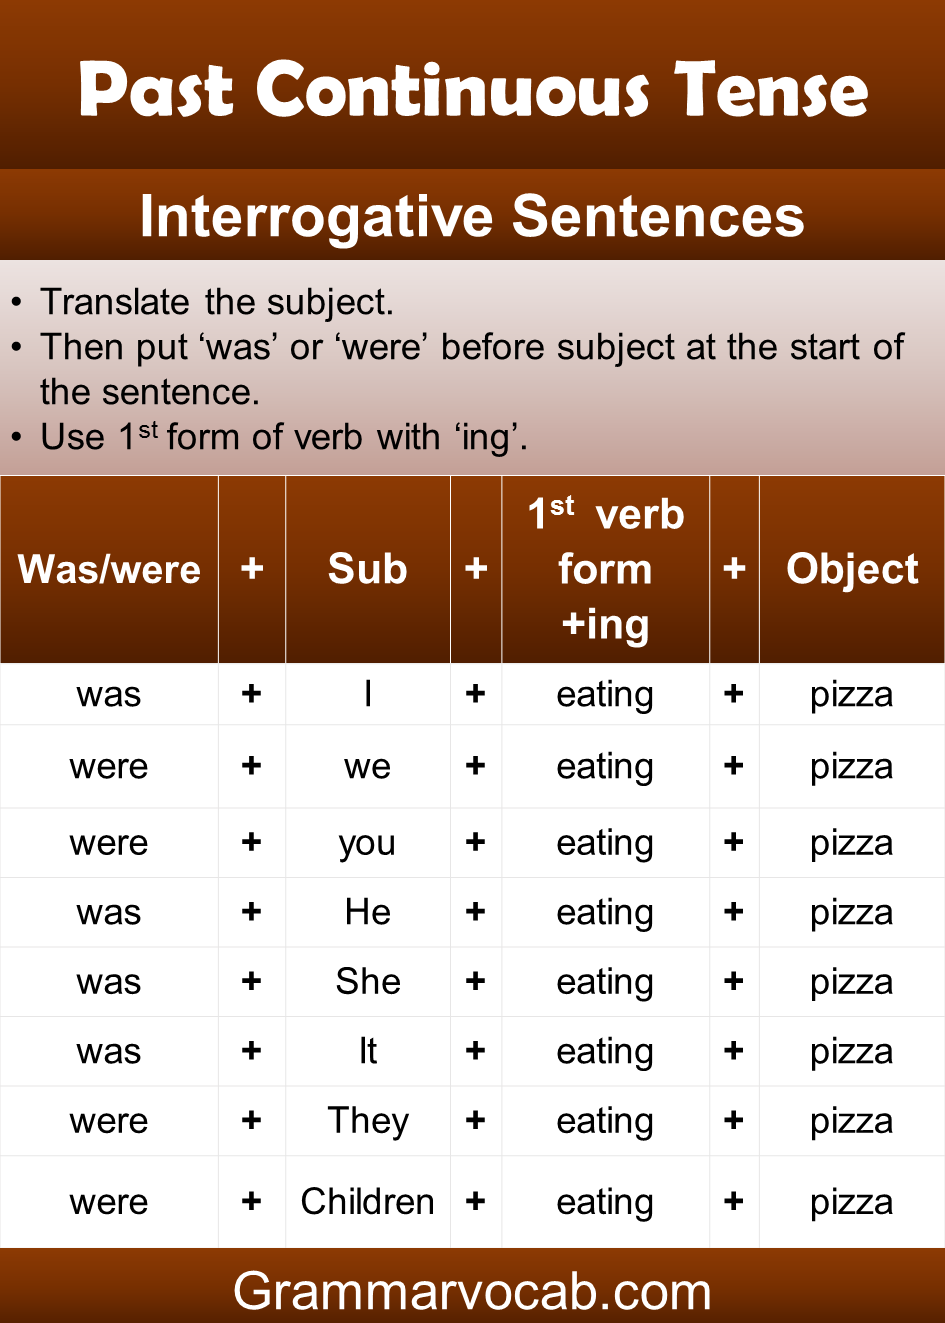 Past continuous tense sentence structure